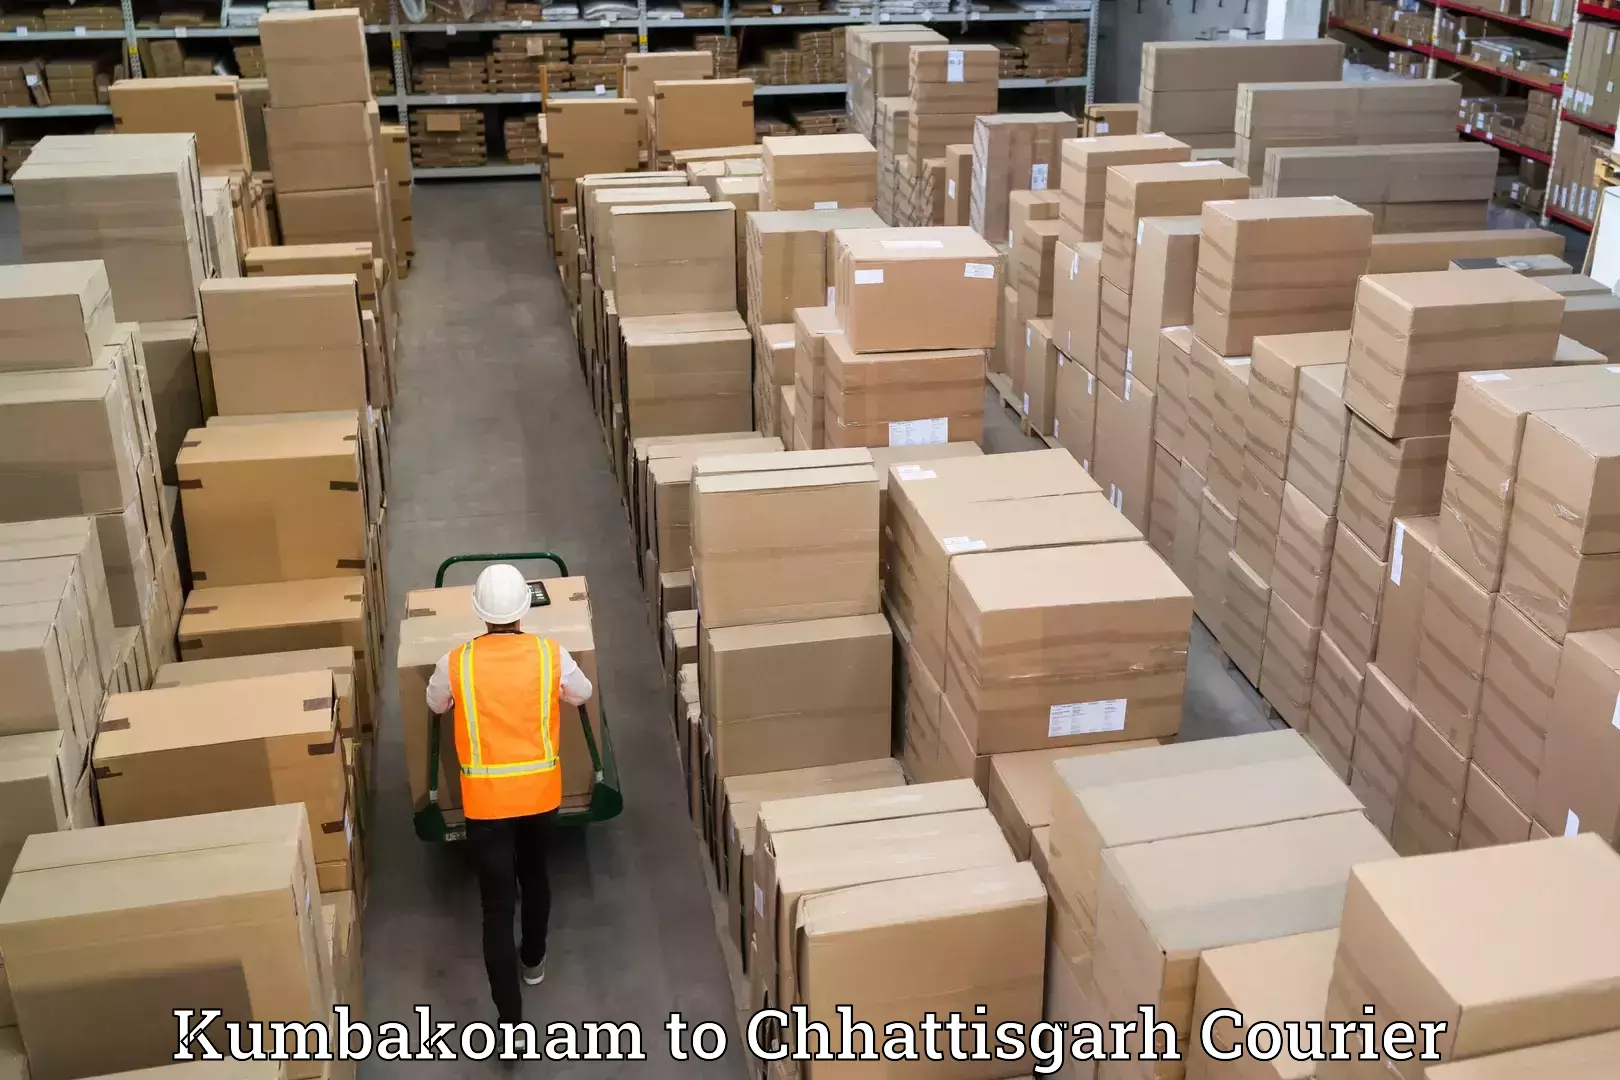 Furniture transport company Kumbakonam to Chhattisgarh